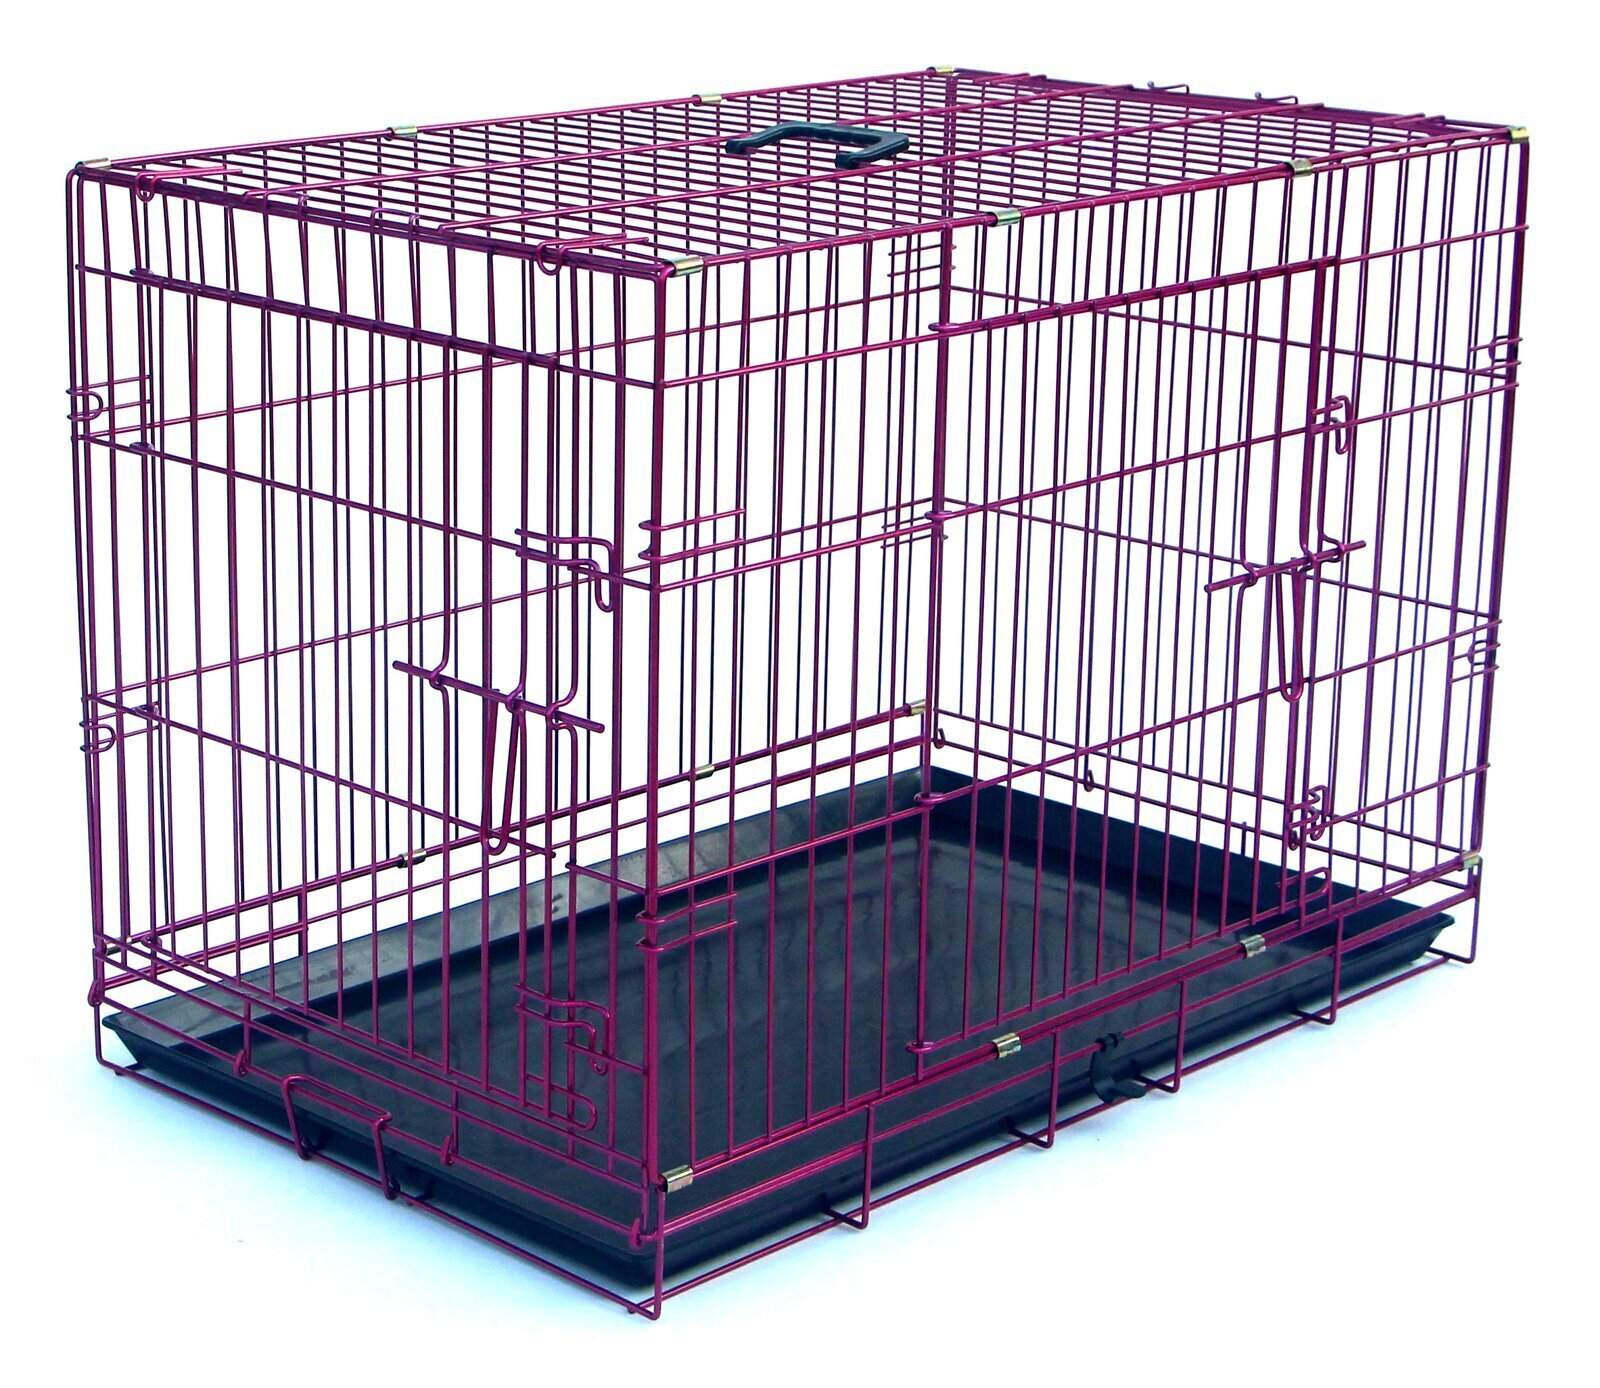 Purple dog cage in a wire design